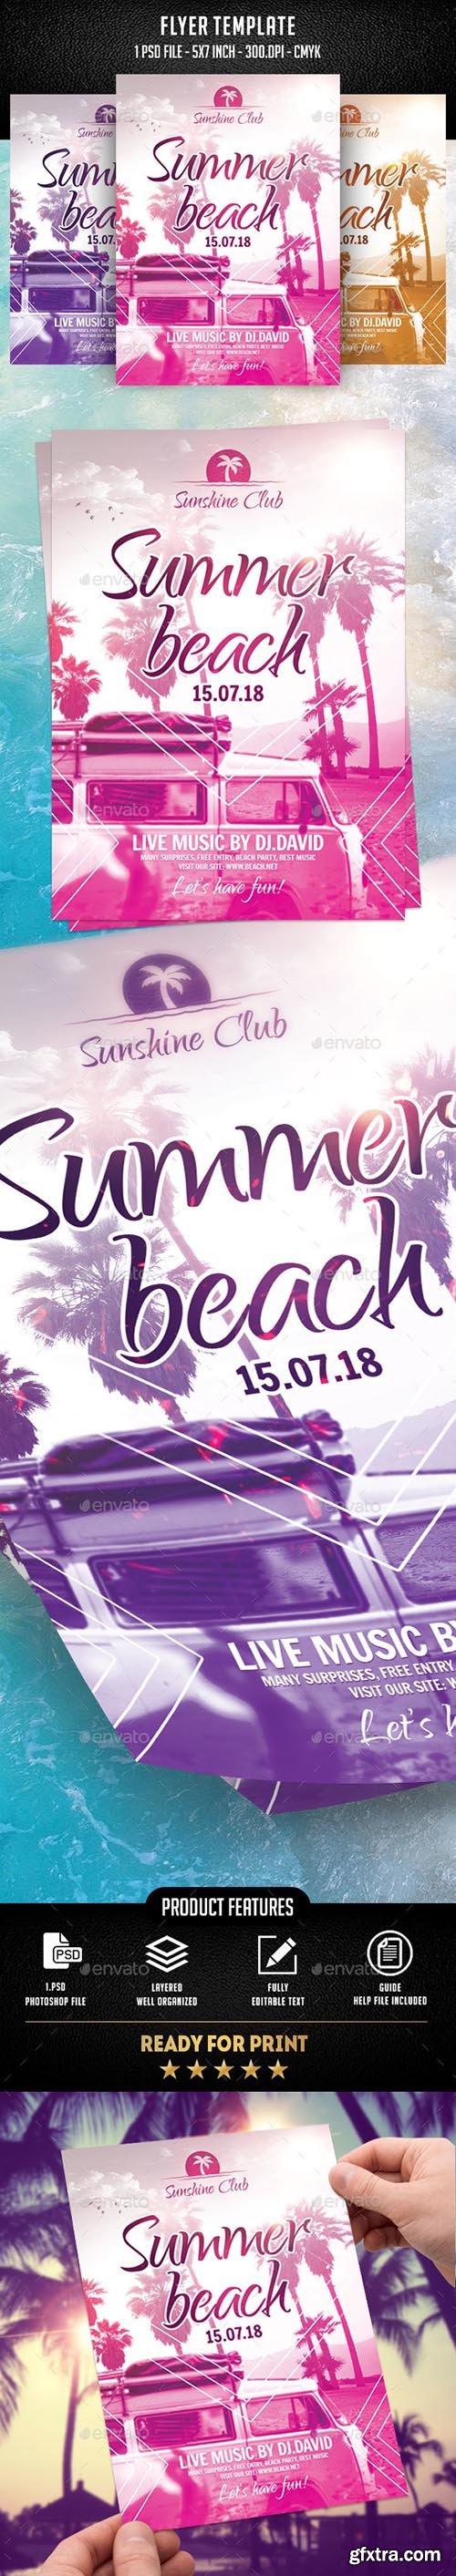 Summer Beach Flyer Template 21964666